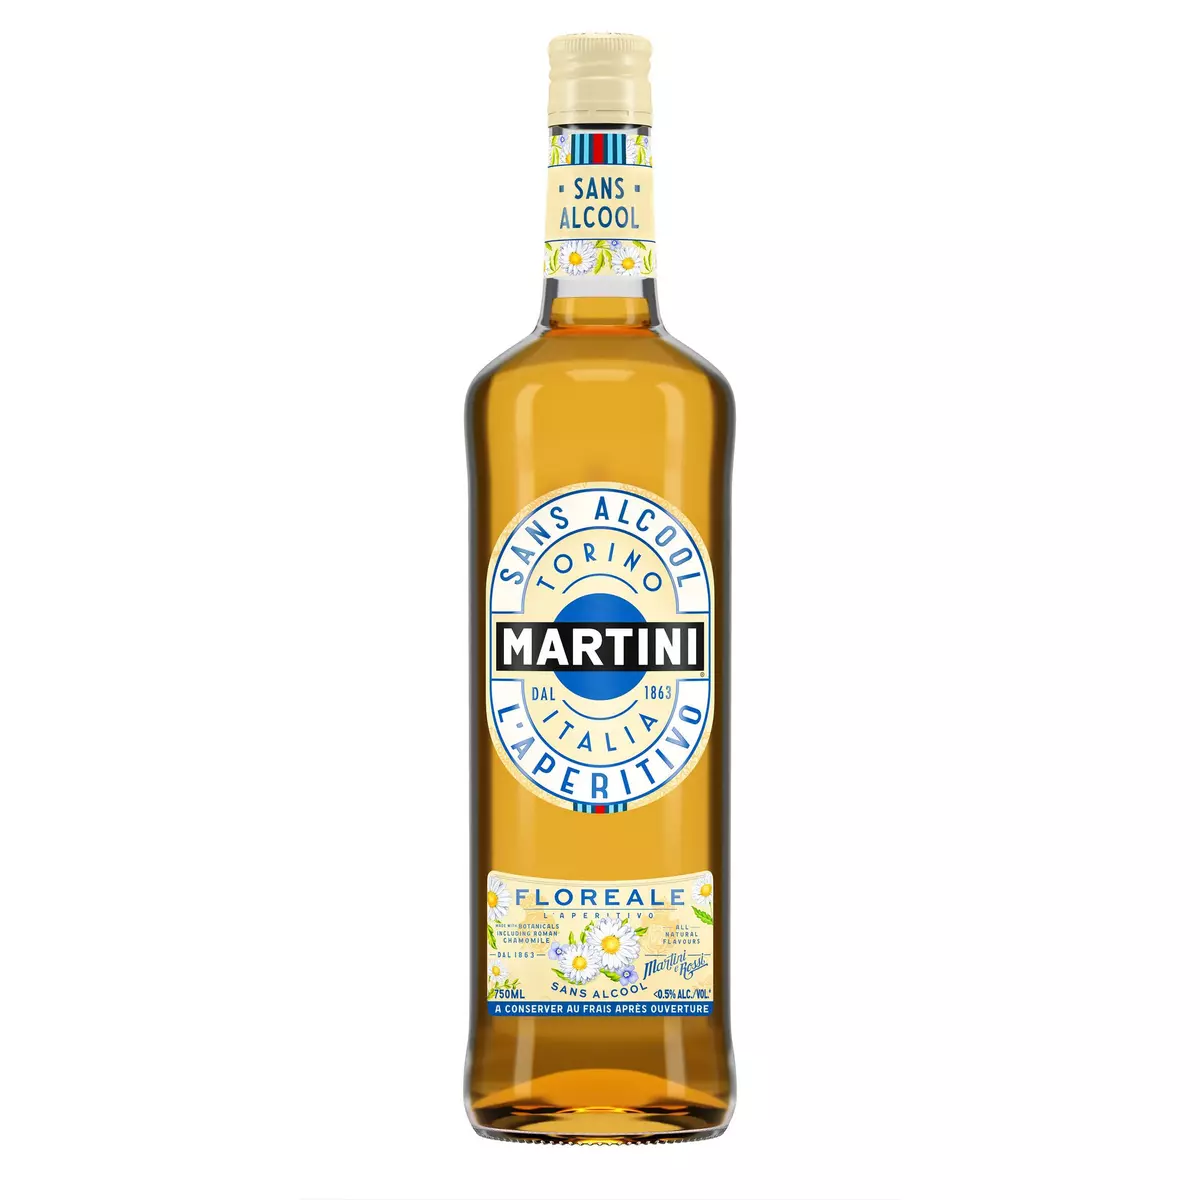 MARTINI L'Aperitivo sans alcool Floréale 0.5% 75cl